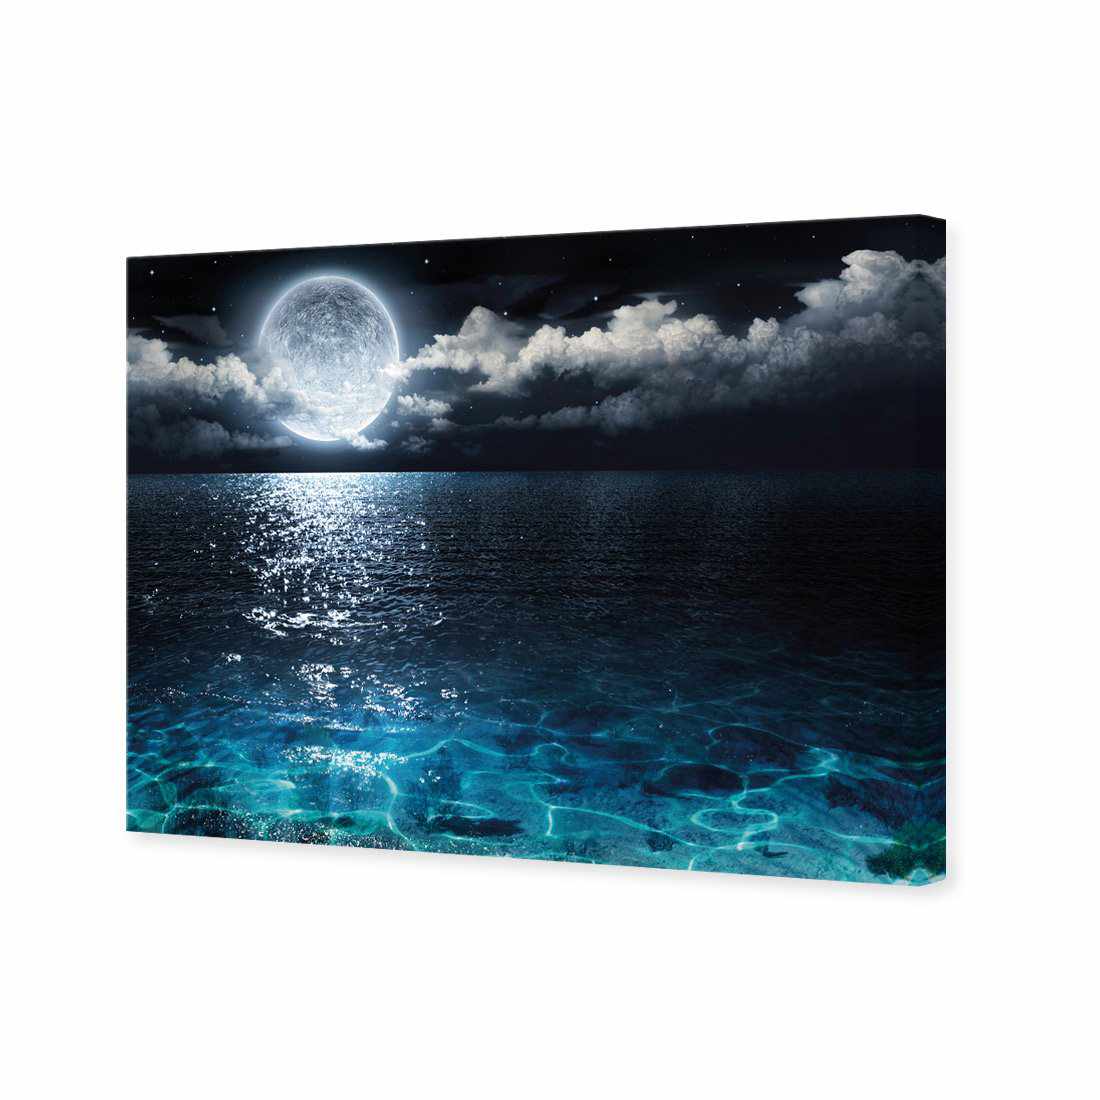 Moonlight Flit Canvas Art-Canvas-Wall Art Designs-45x30cm-Canvas - No Frame-Wall Art Designs